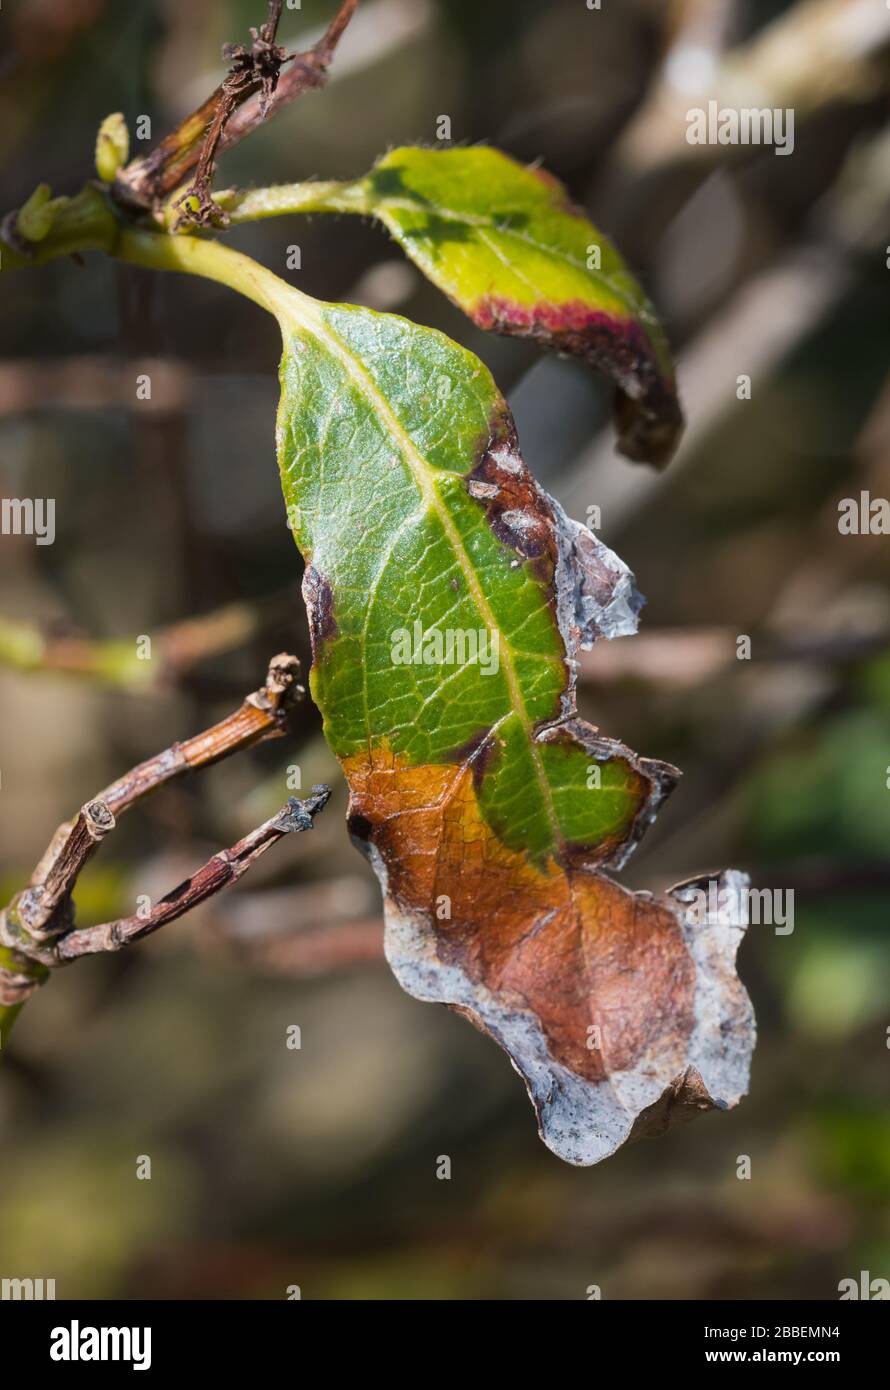 Beschädigte Blätter durch Blattbrand (Blattbrand, Blattwilz, Blattsunbrand,  Sonnenbrand) auf einer Viburnum-Tinus-Pflanze (Laurustinus) im Frühling,  Großbritannien, bräunen Stockfotografie - Alamy